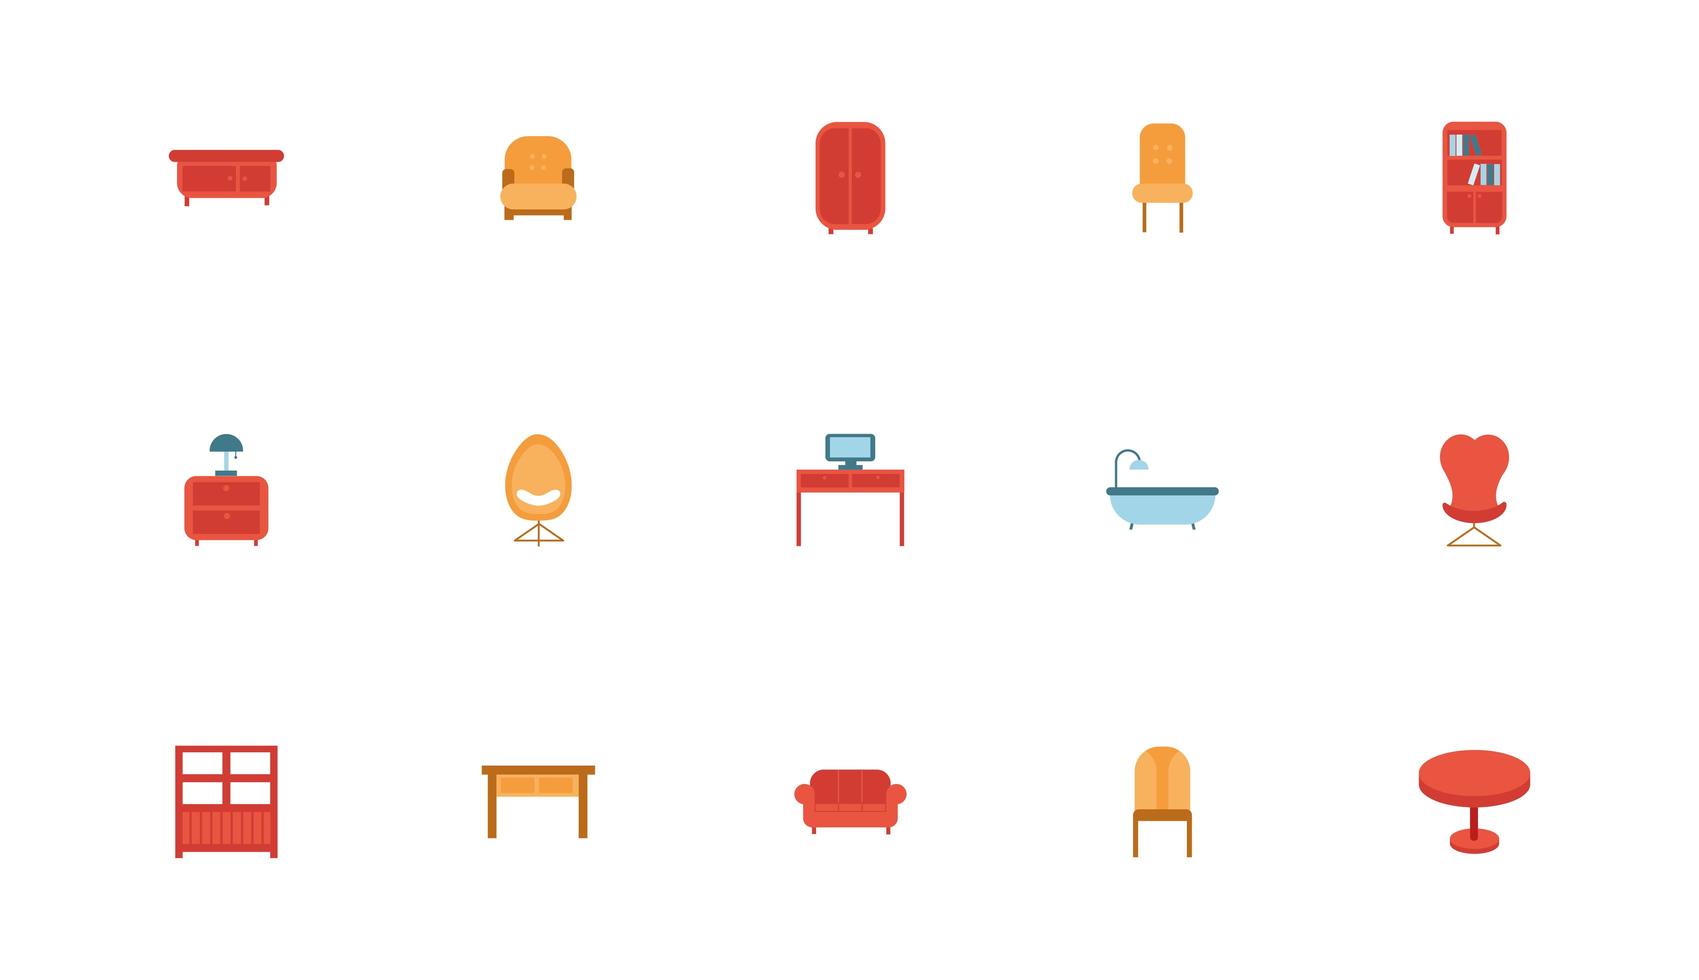 bunt av möbler set ikoner vektor